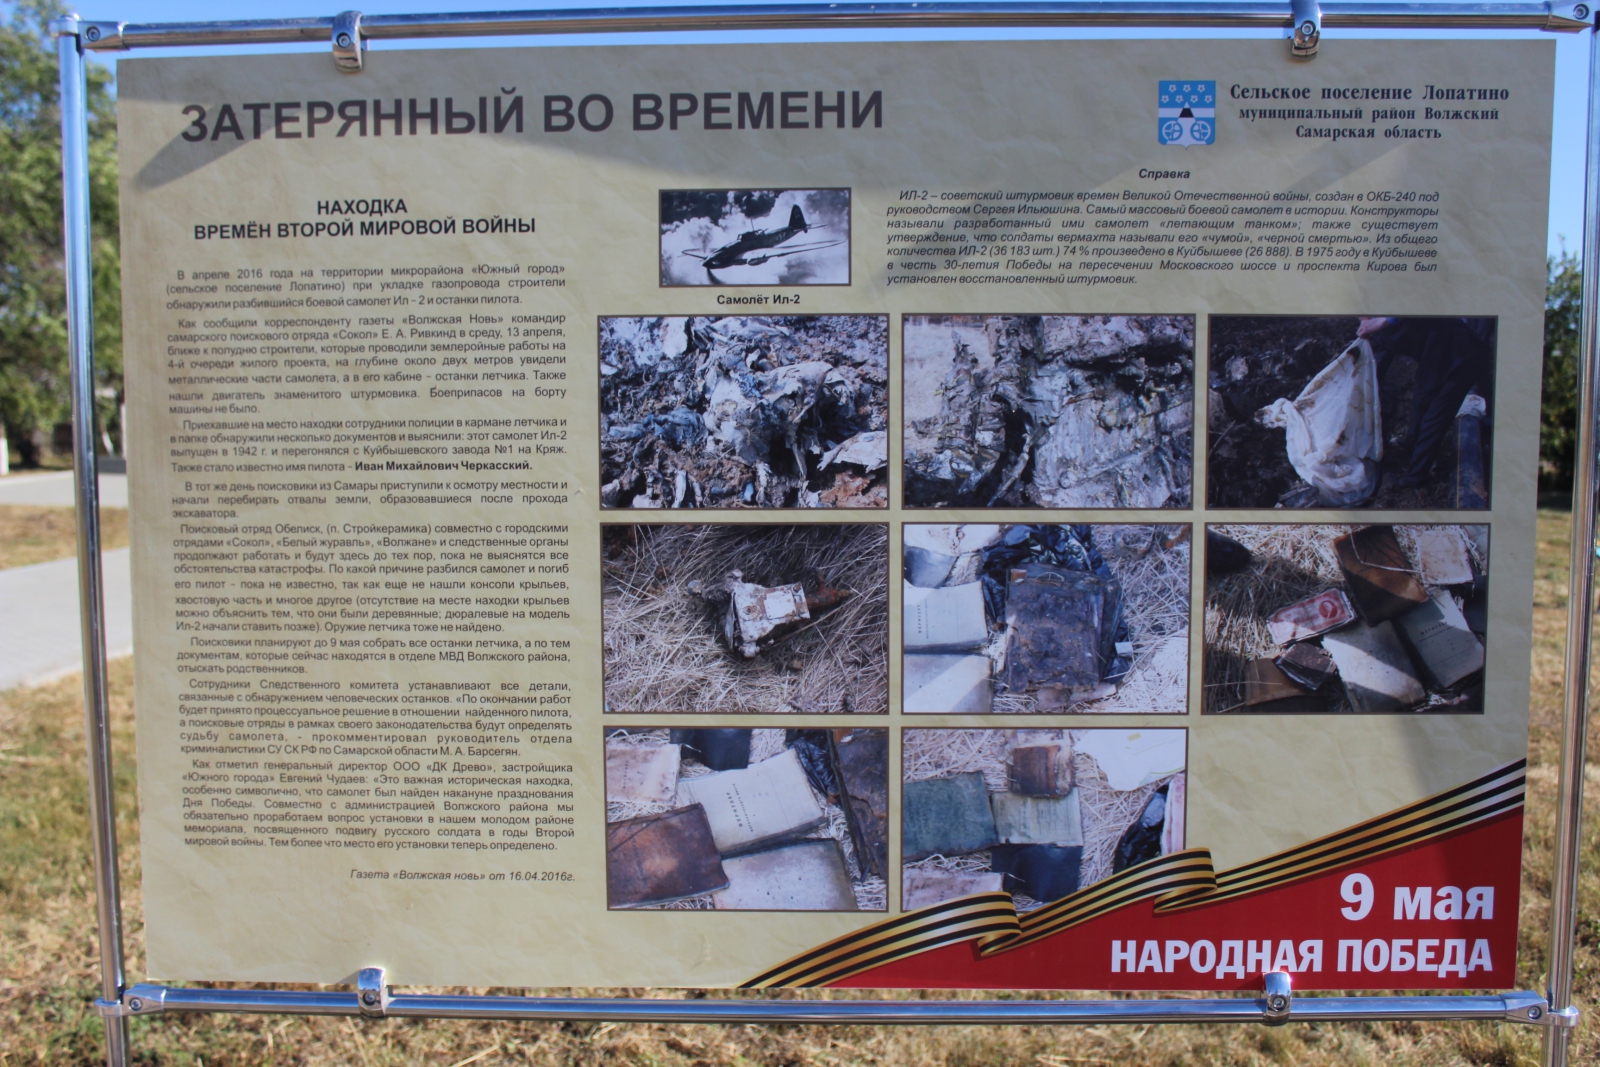 Памятники погибшим пилотам. В Волжском районе Самарской области нашли захоронение.